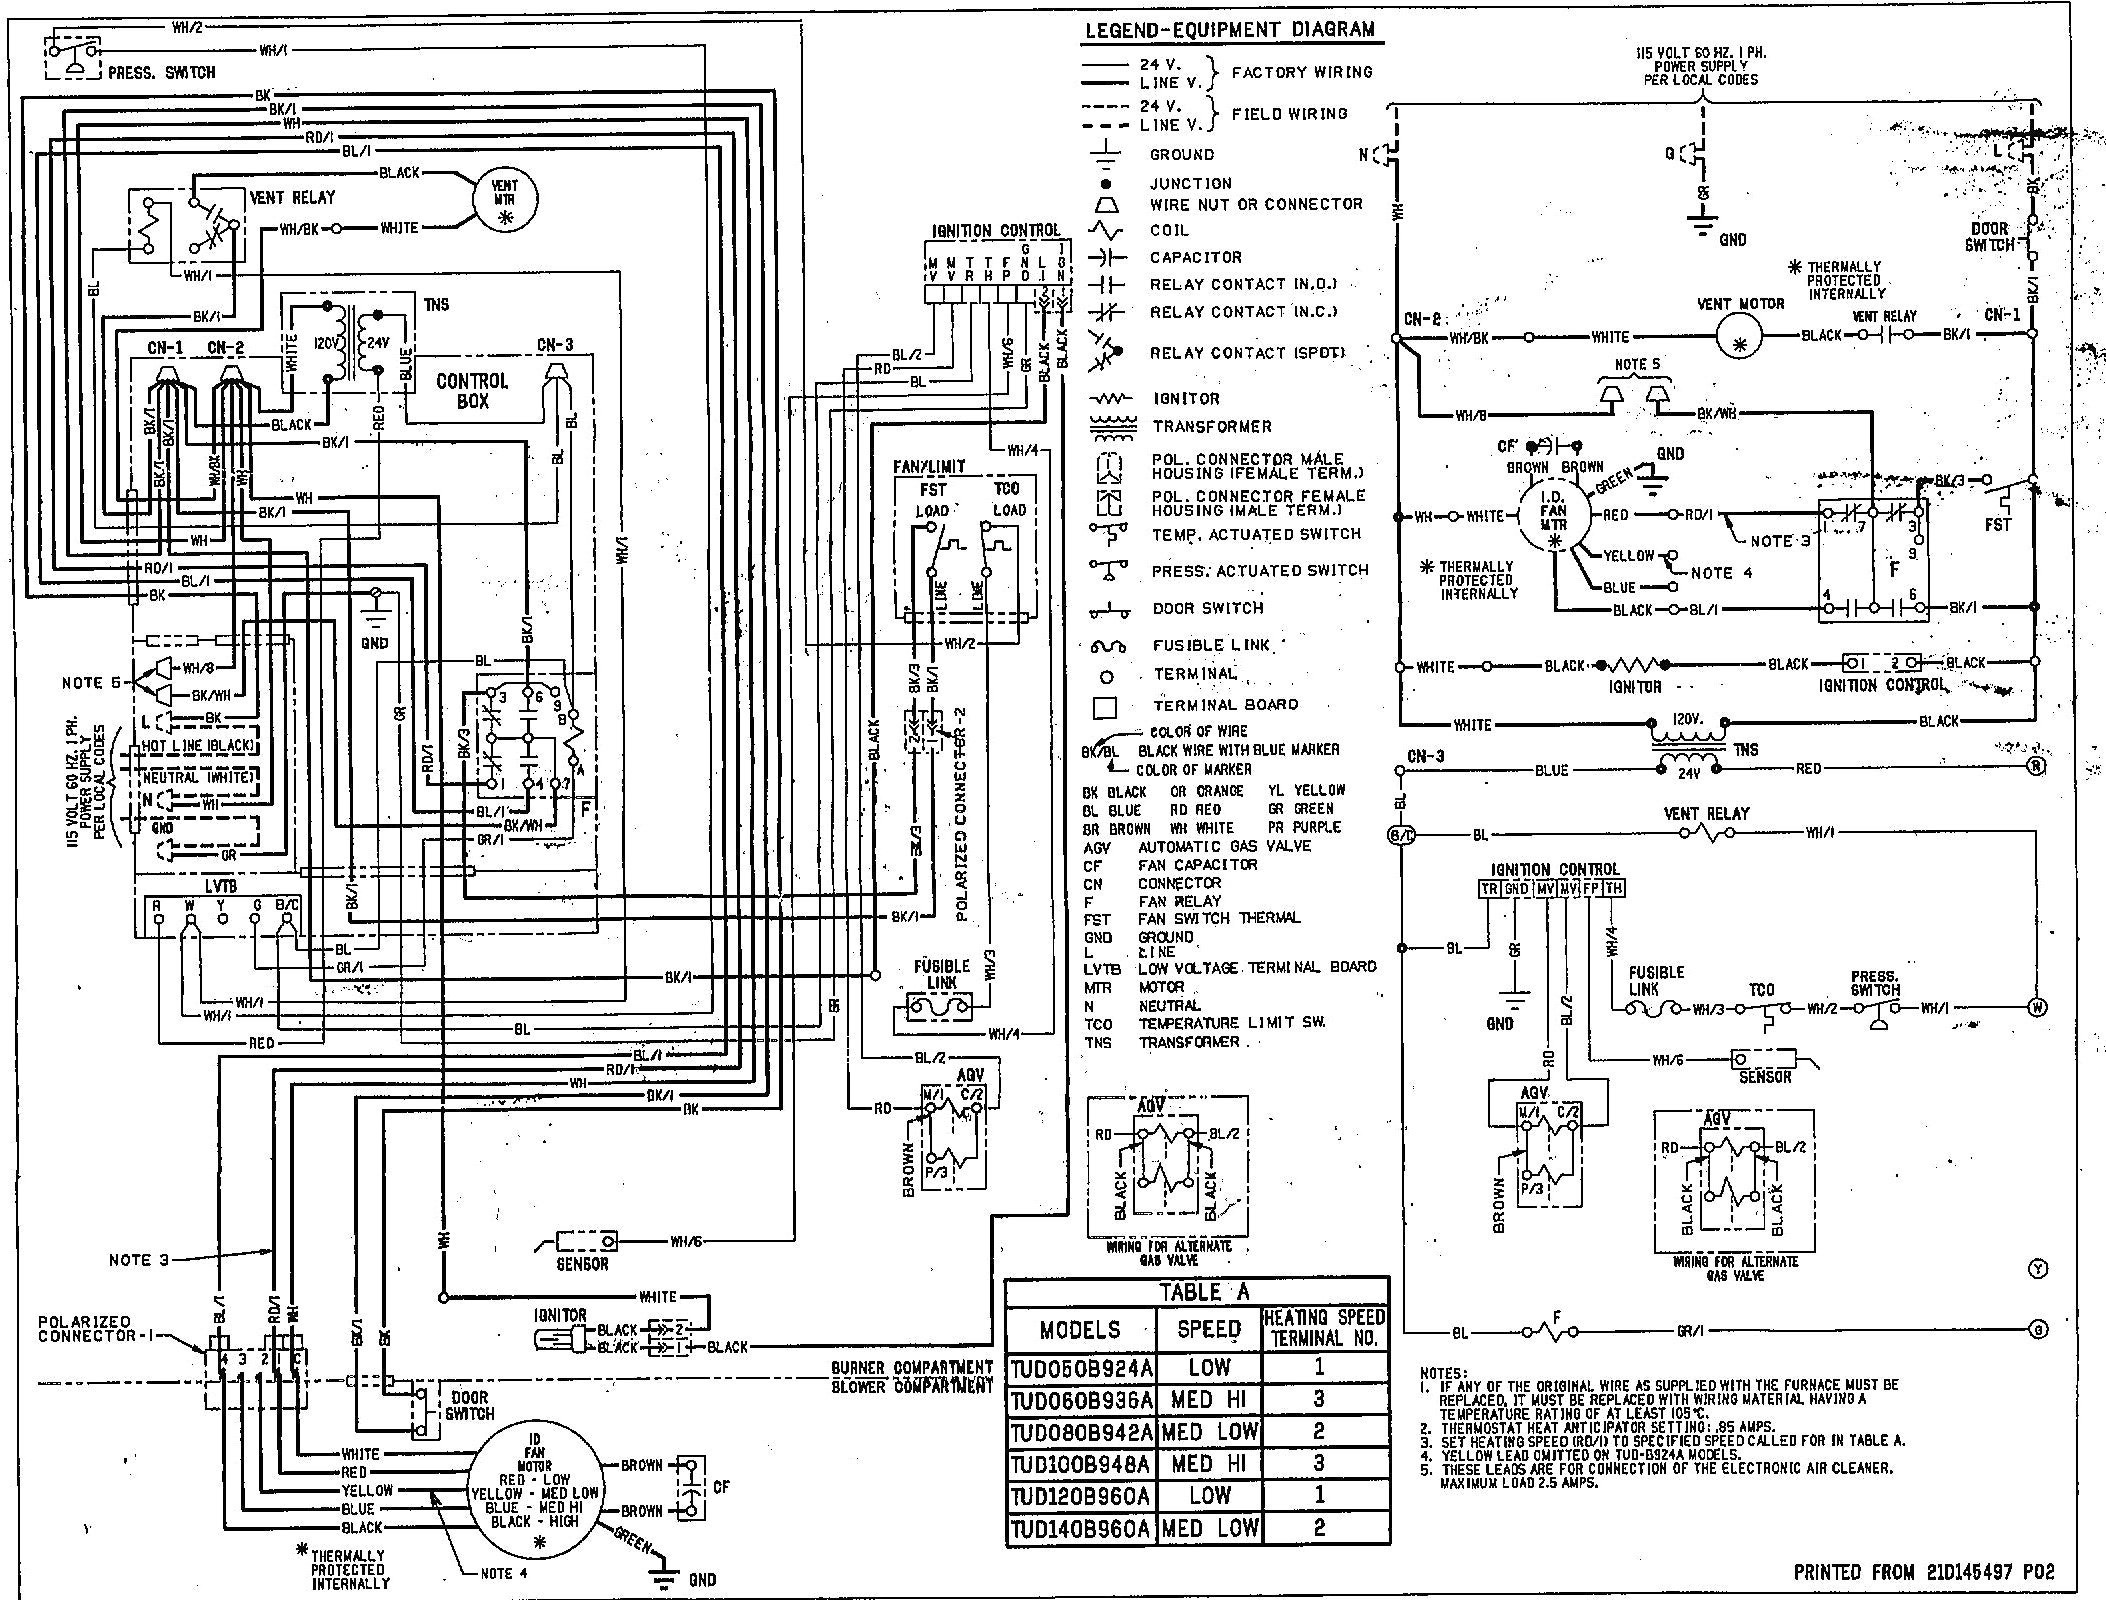 Trane Air Handler Wiring Diagram Trane Mercial Air Handler Wiring Diagram Experts Wiring Of Trane Air Handler Wiring Diagram